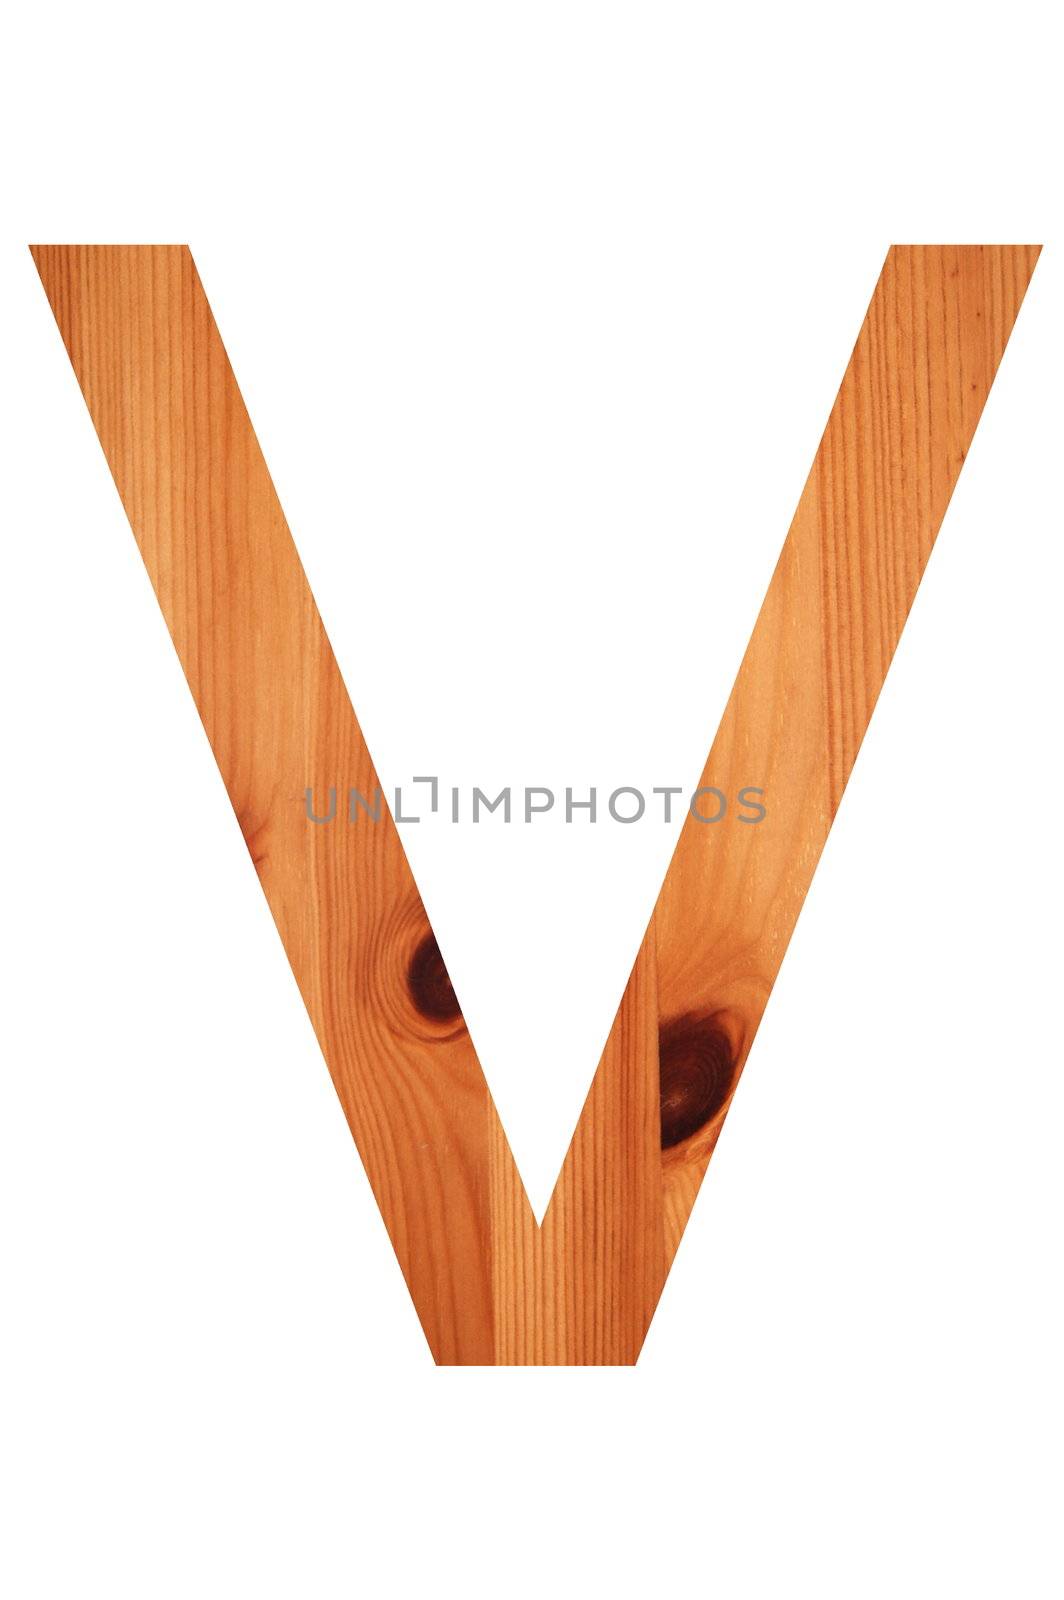 wood alphabet V by gunnar3000